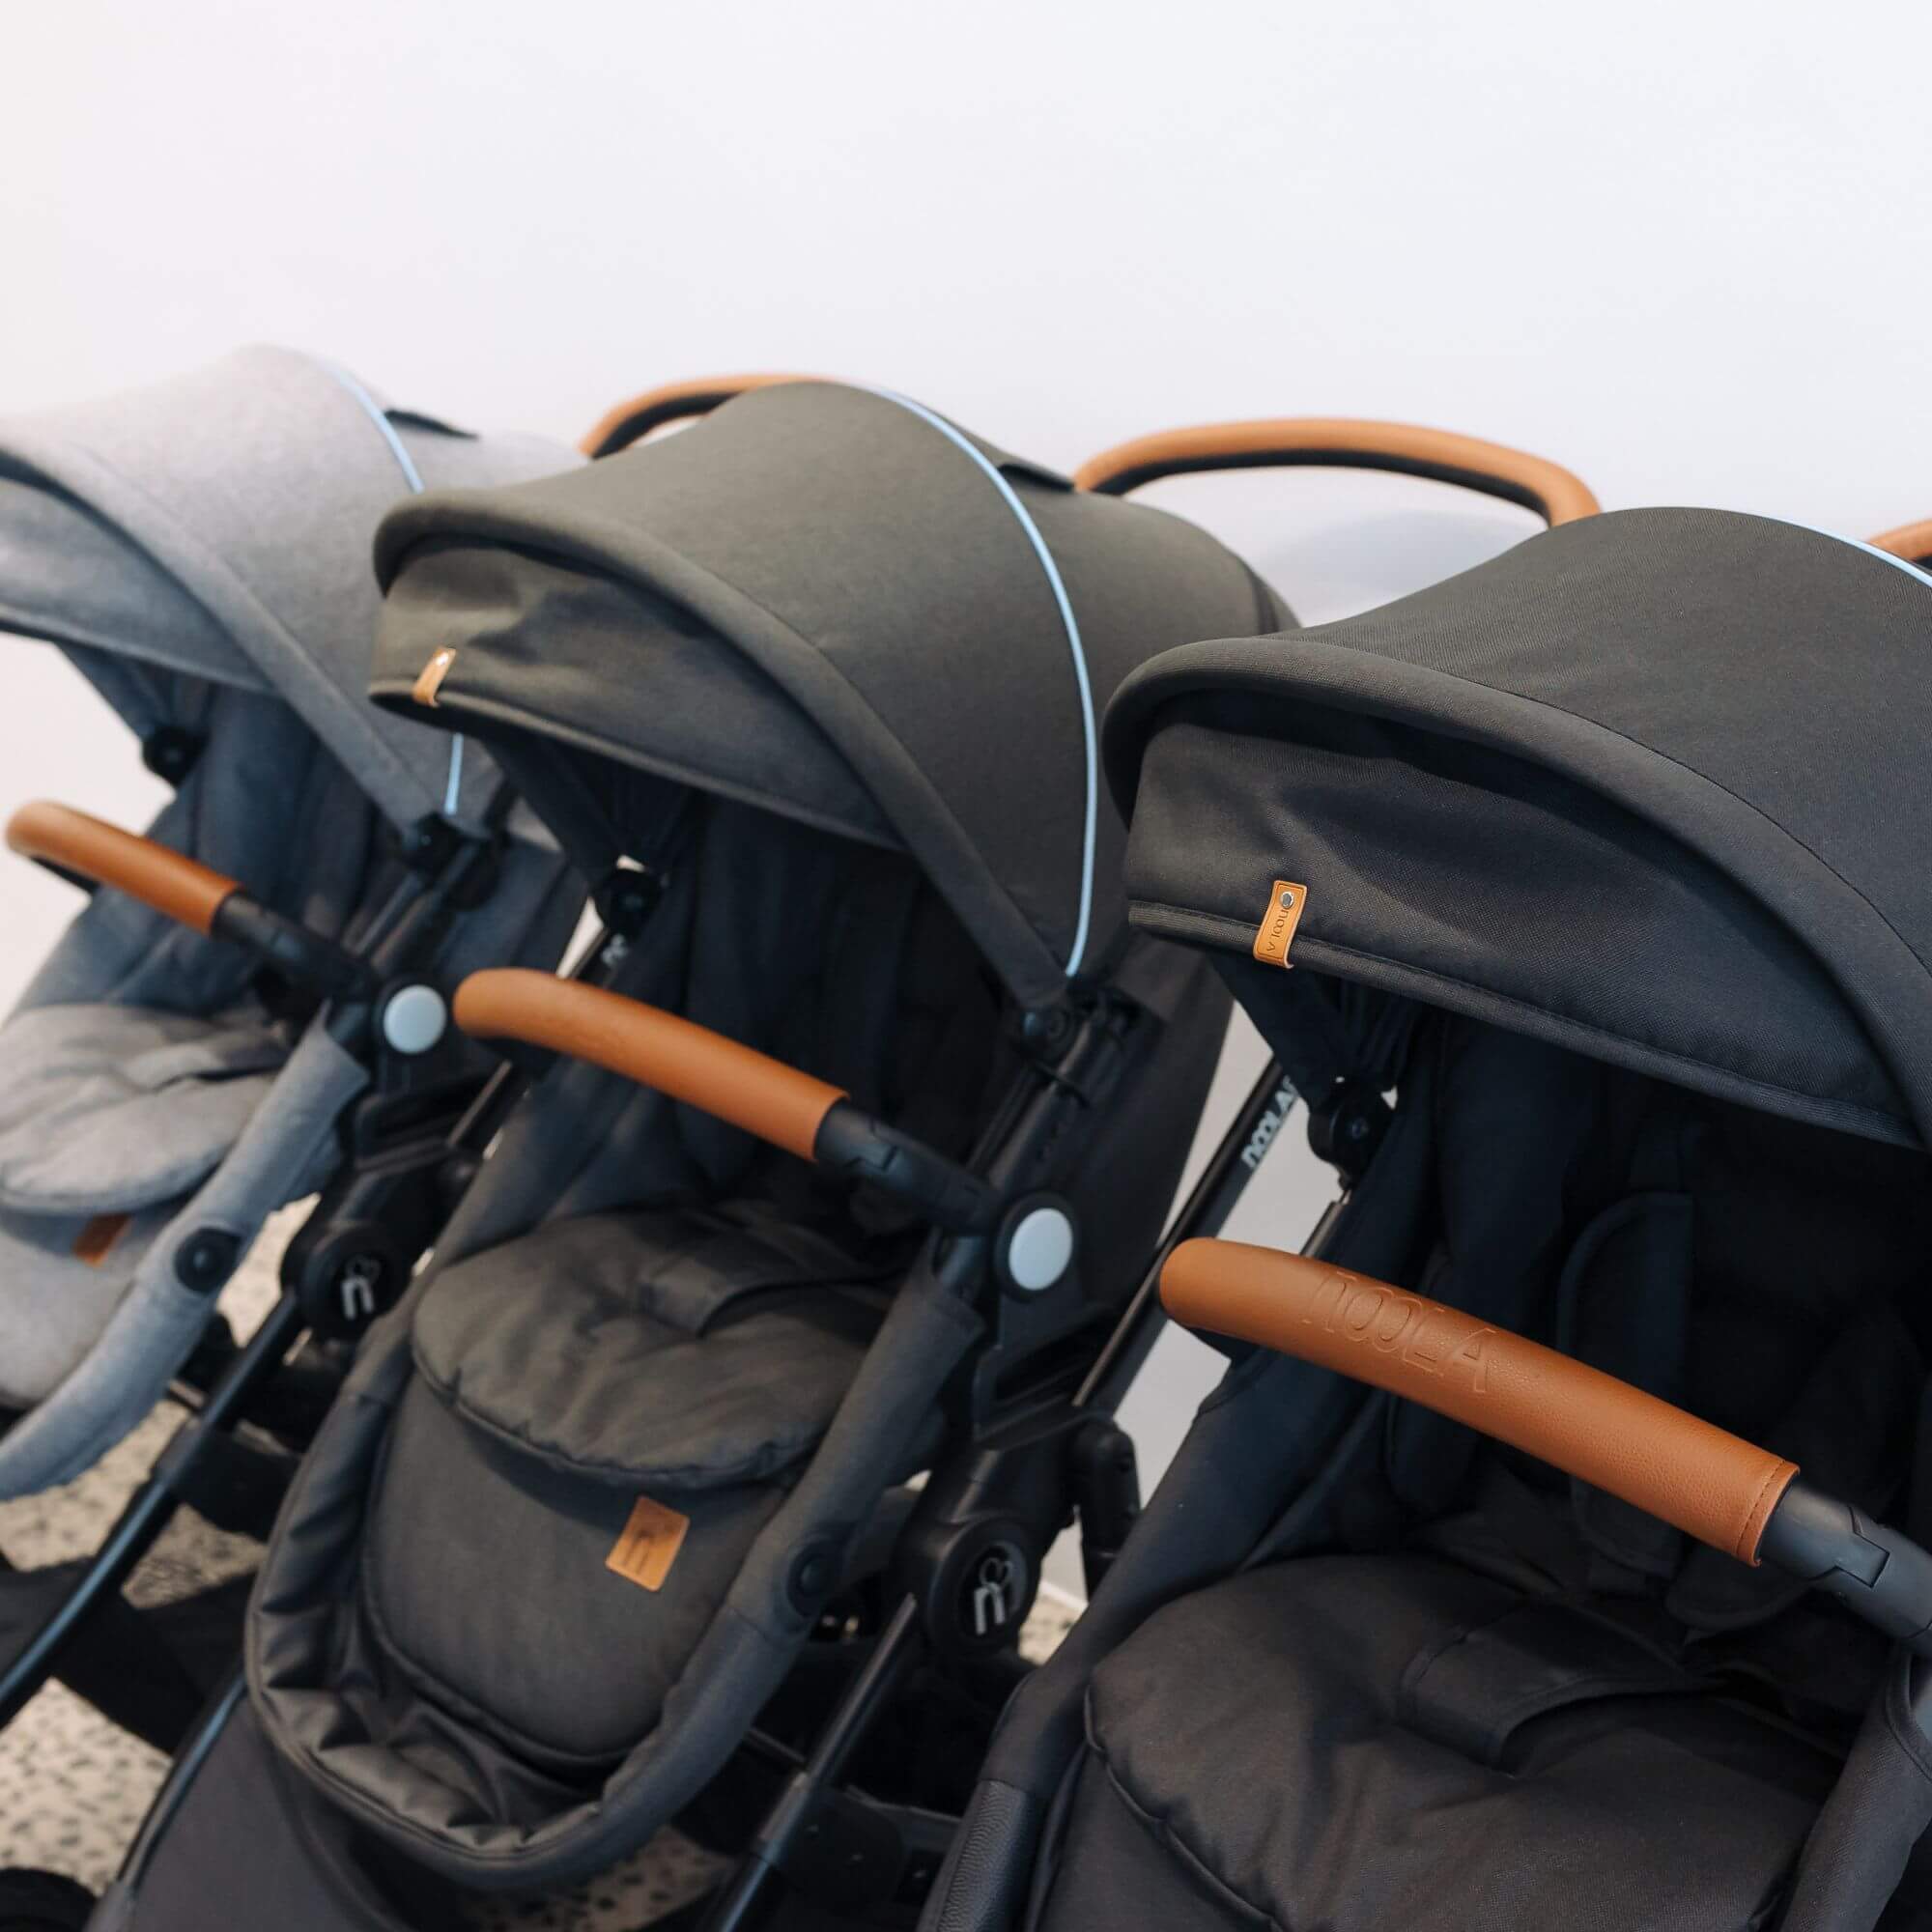 noola the elite 4in1 travel system midnight black baby stroller